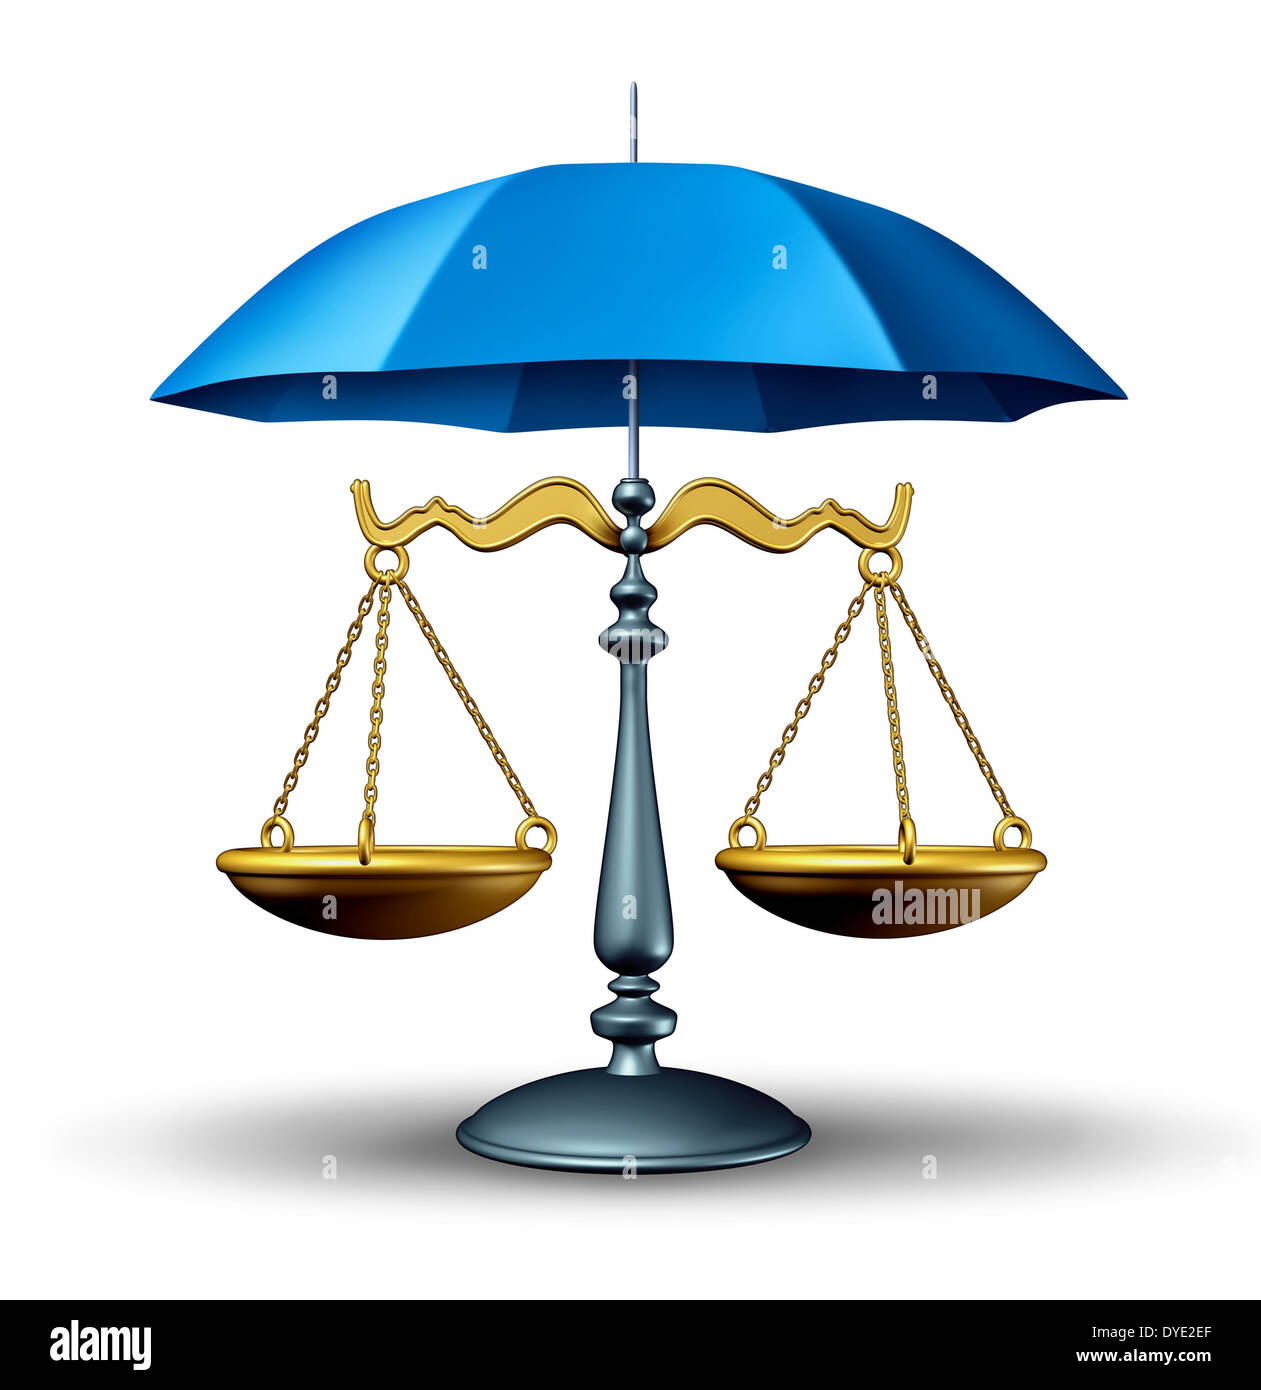 limpiador Descuidado En cualquier momento Concepto de seguridad jurídica con una escala de justicia de derecho  protegido por un paraguas azul como un símbolo de seguridad del sistema  judicial en el gobierno y la sociedad en la